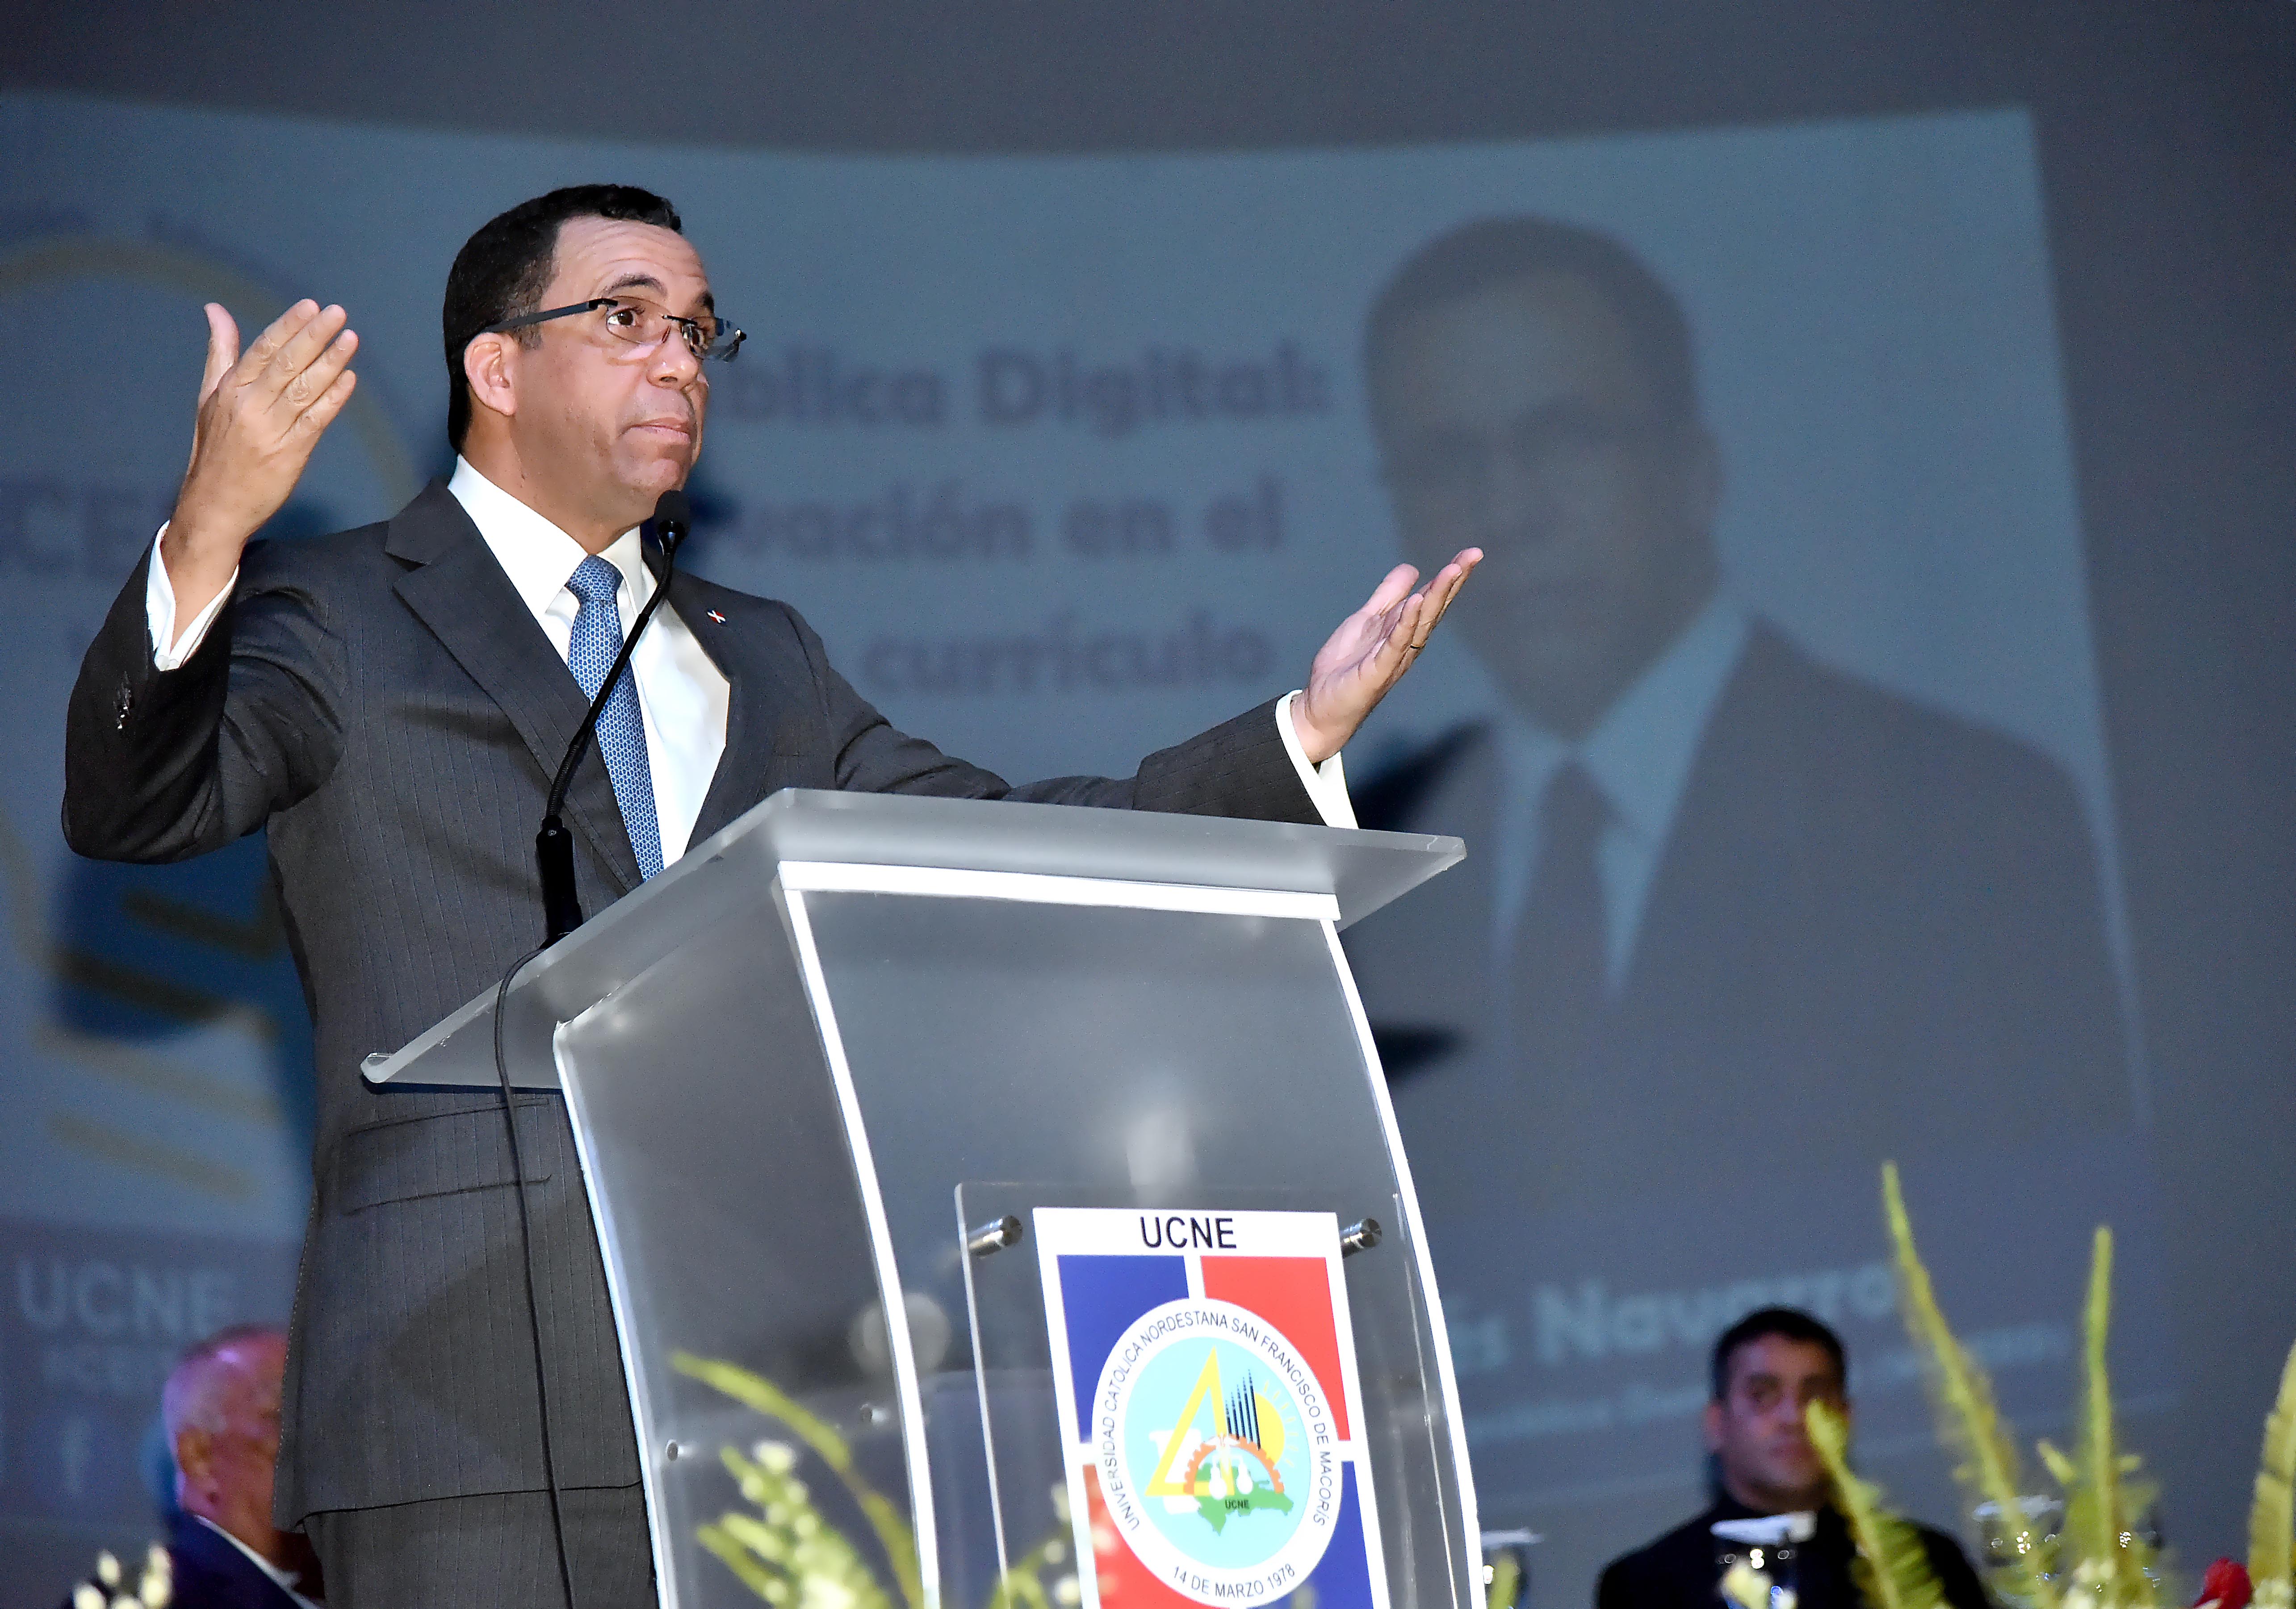  imagen Ministro Andrés Navarro de pie en podium exponiendo discurso al lado de mesa principal en posgrado de la Universidad Católica Nordestana 